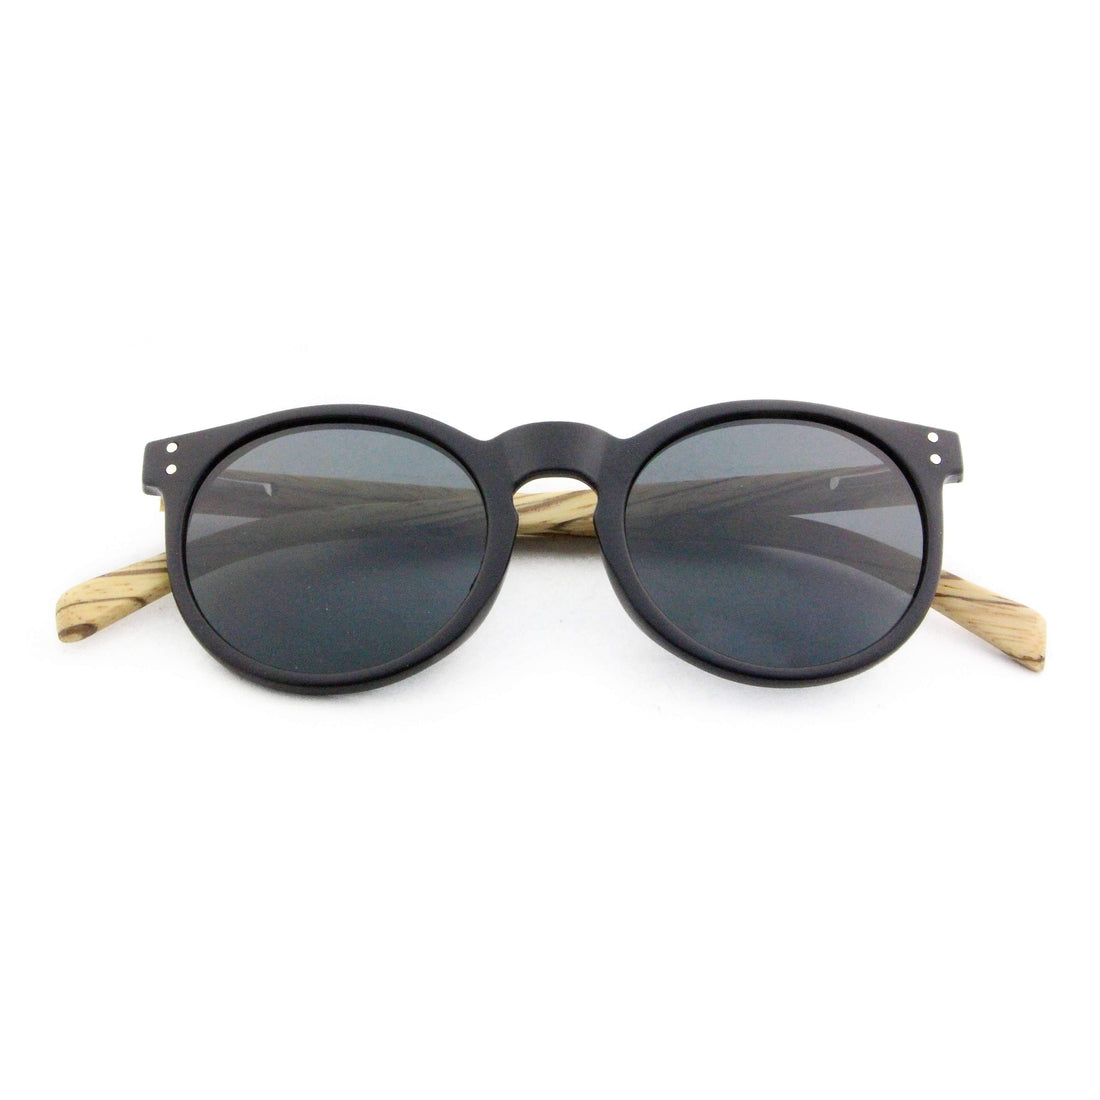 Vilo Wood Sunglasses - Urbanity: